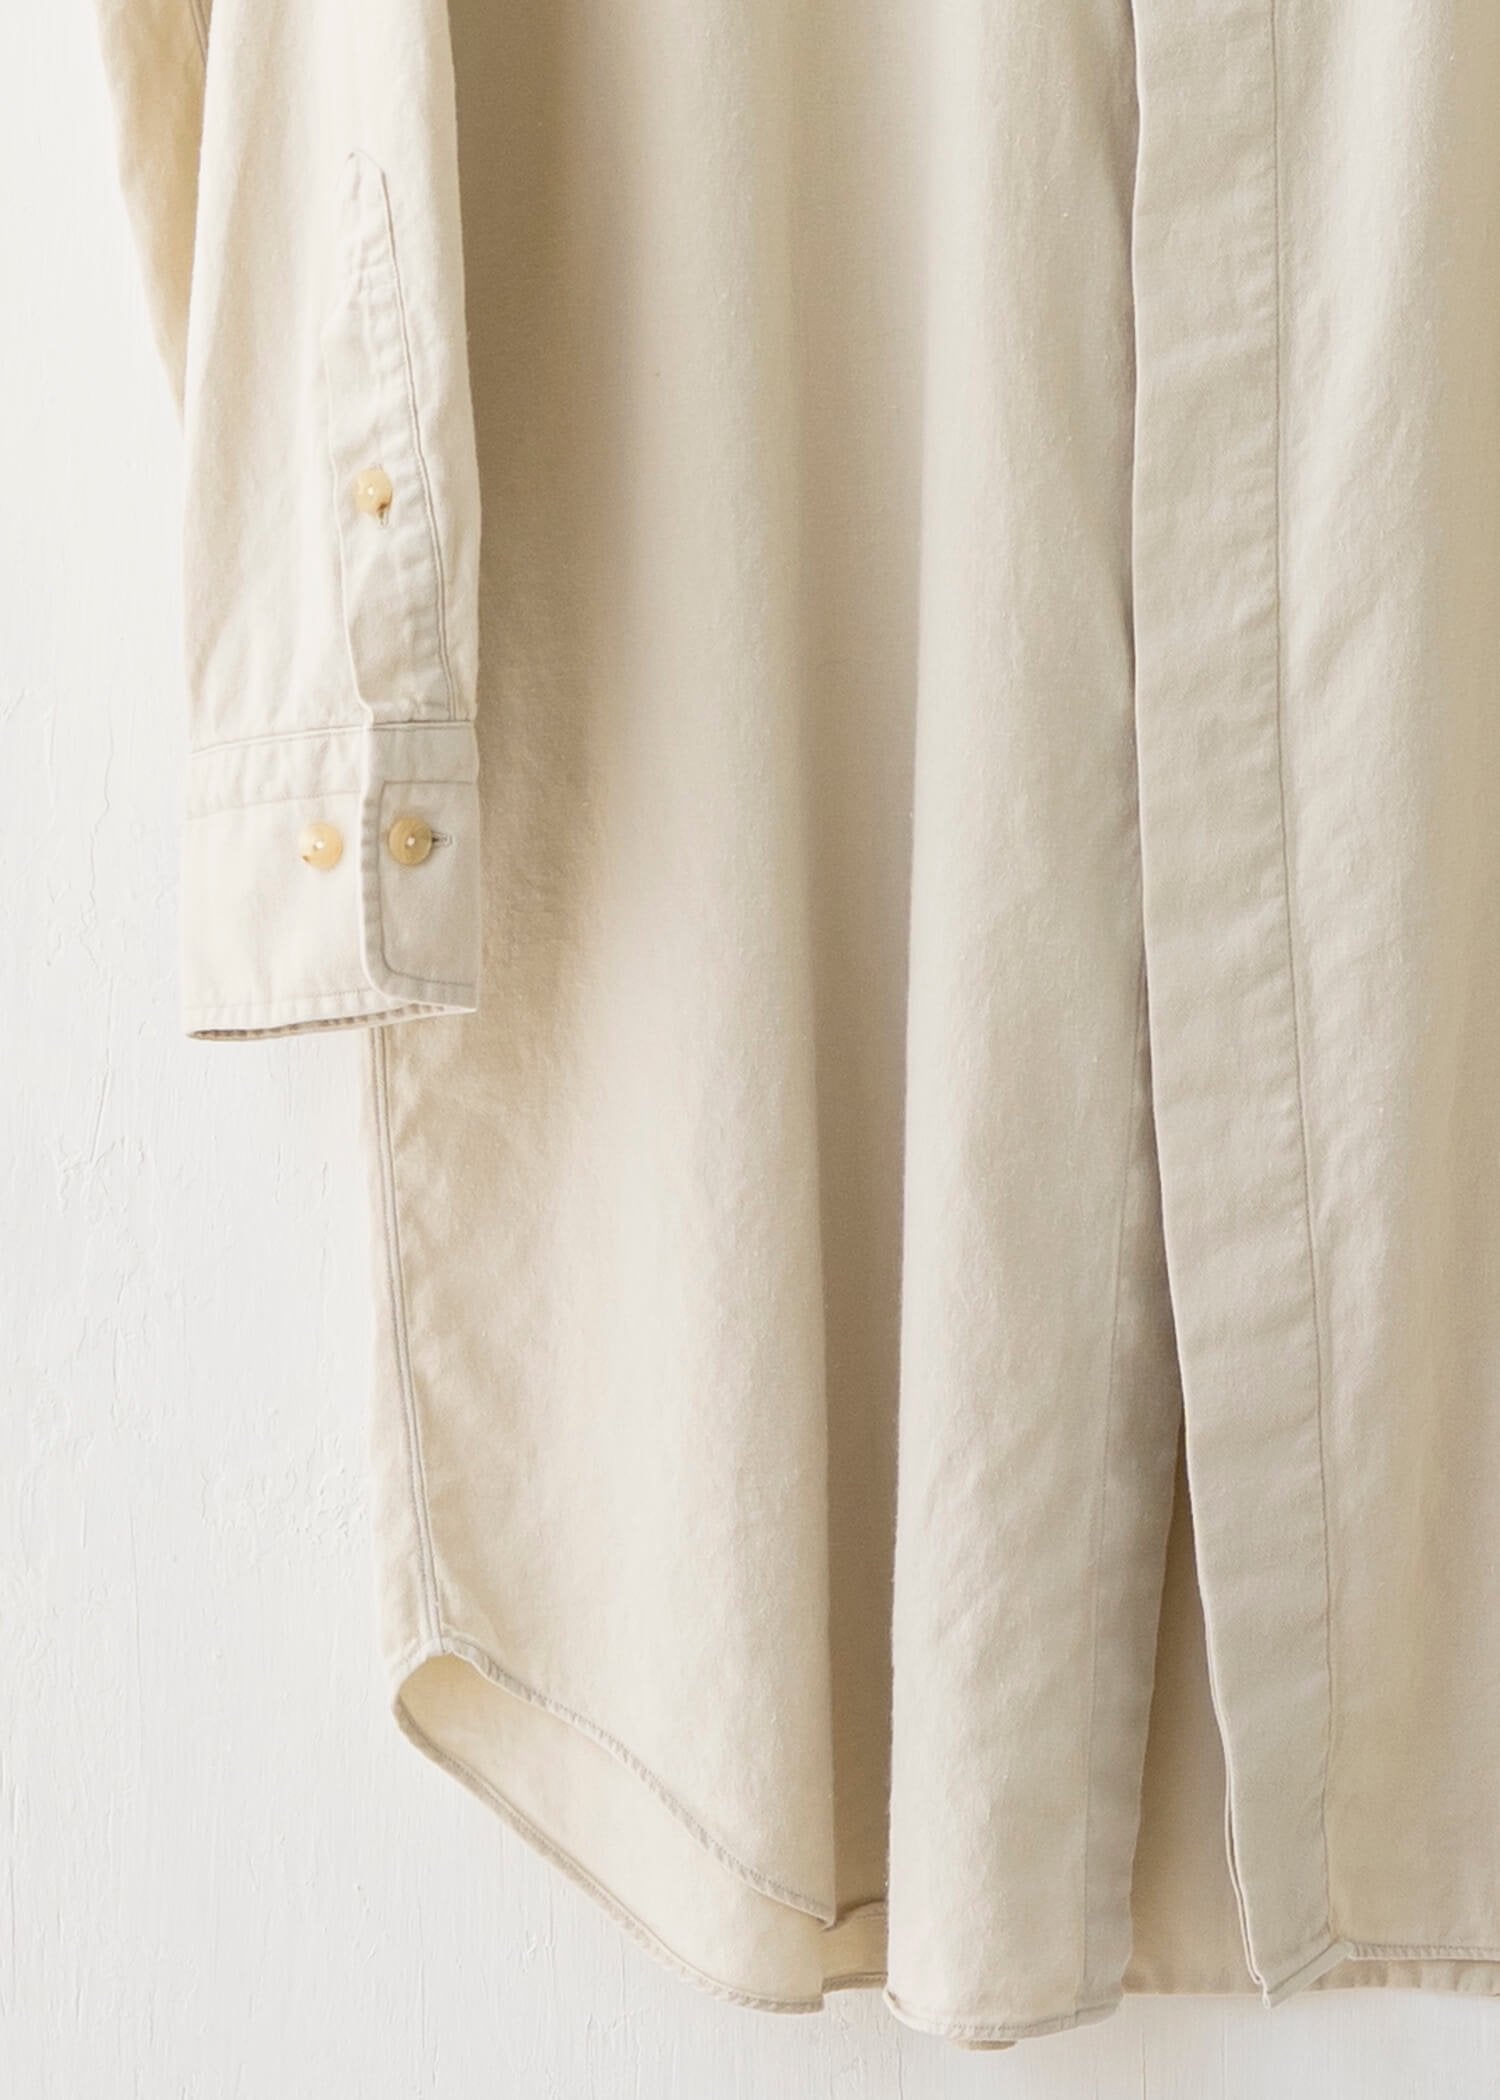 ZIIIN / "ANGO" Sulfur dye Brushed cotton Long shirt / KINARI